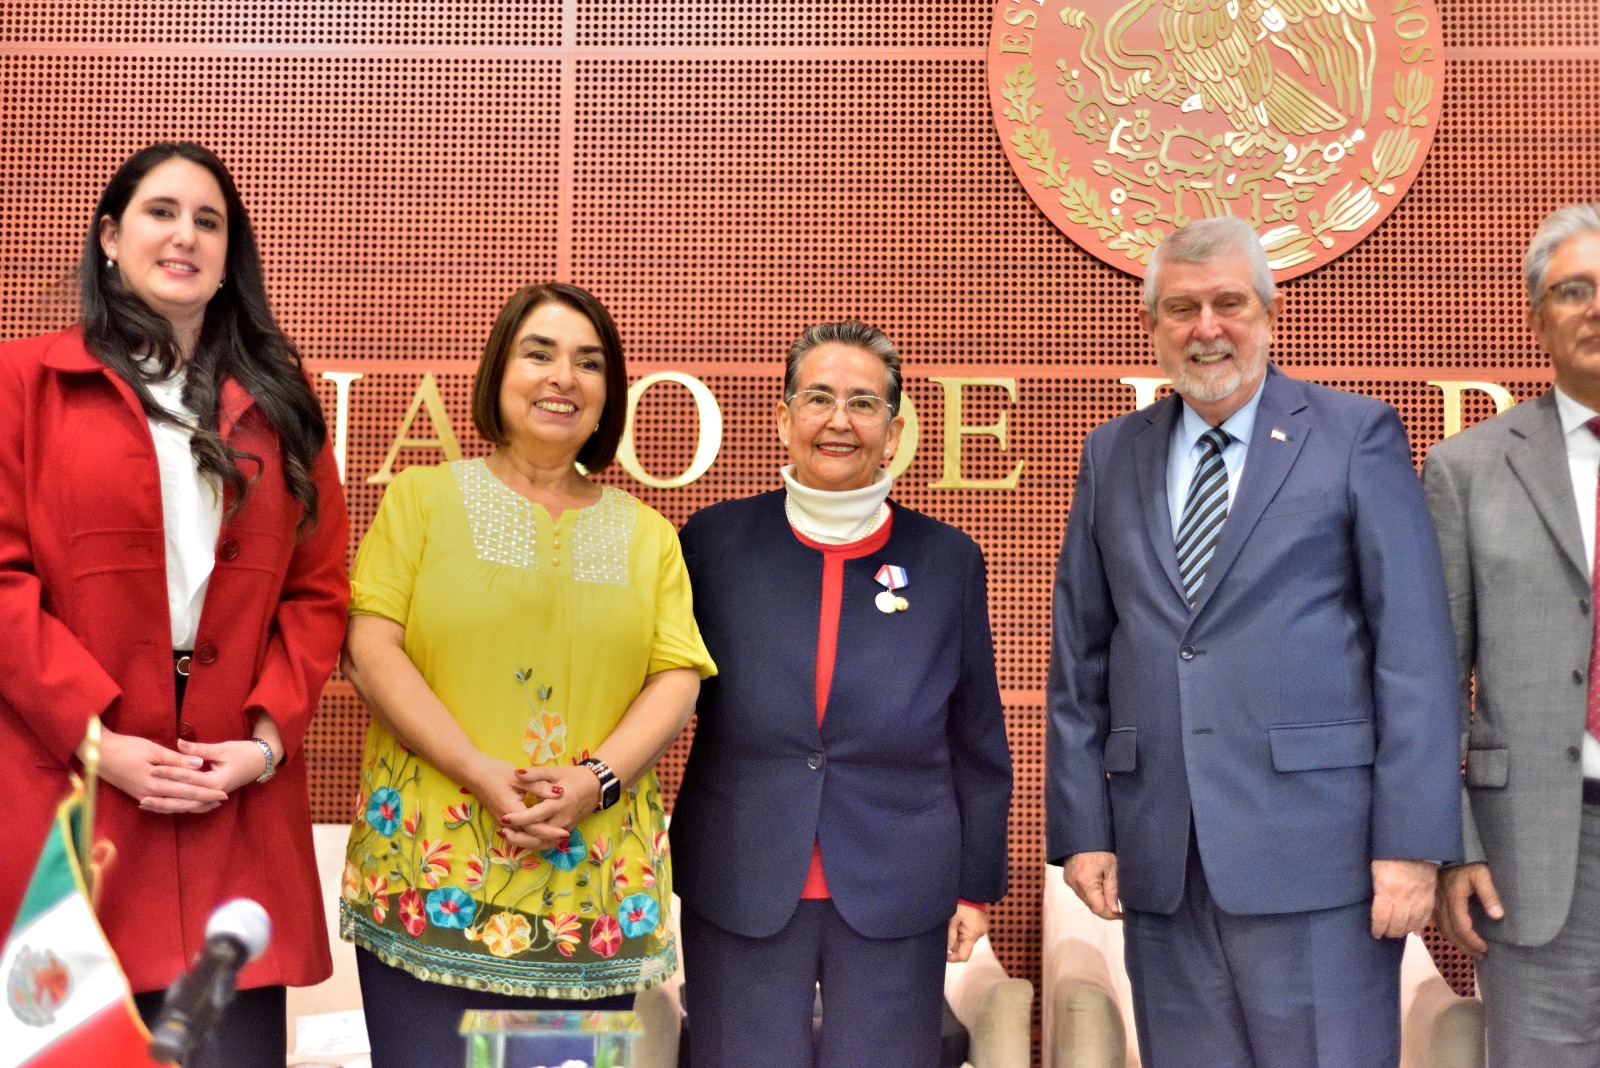 Embajador de Cuba entrega Medalla de la Amistad a la senadora Gloria Sánchez Hernández